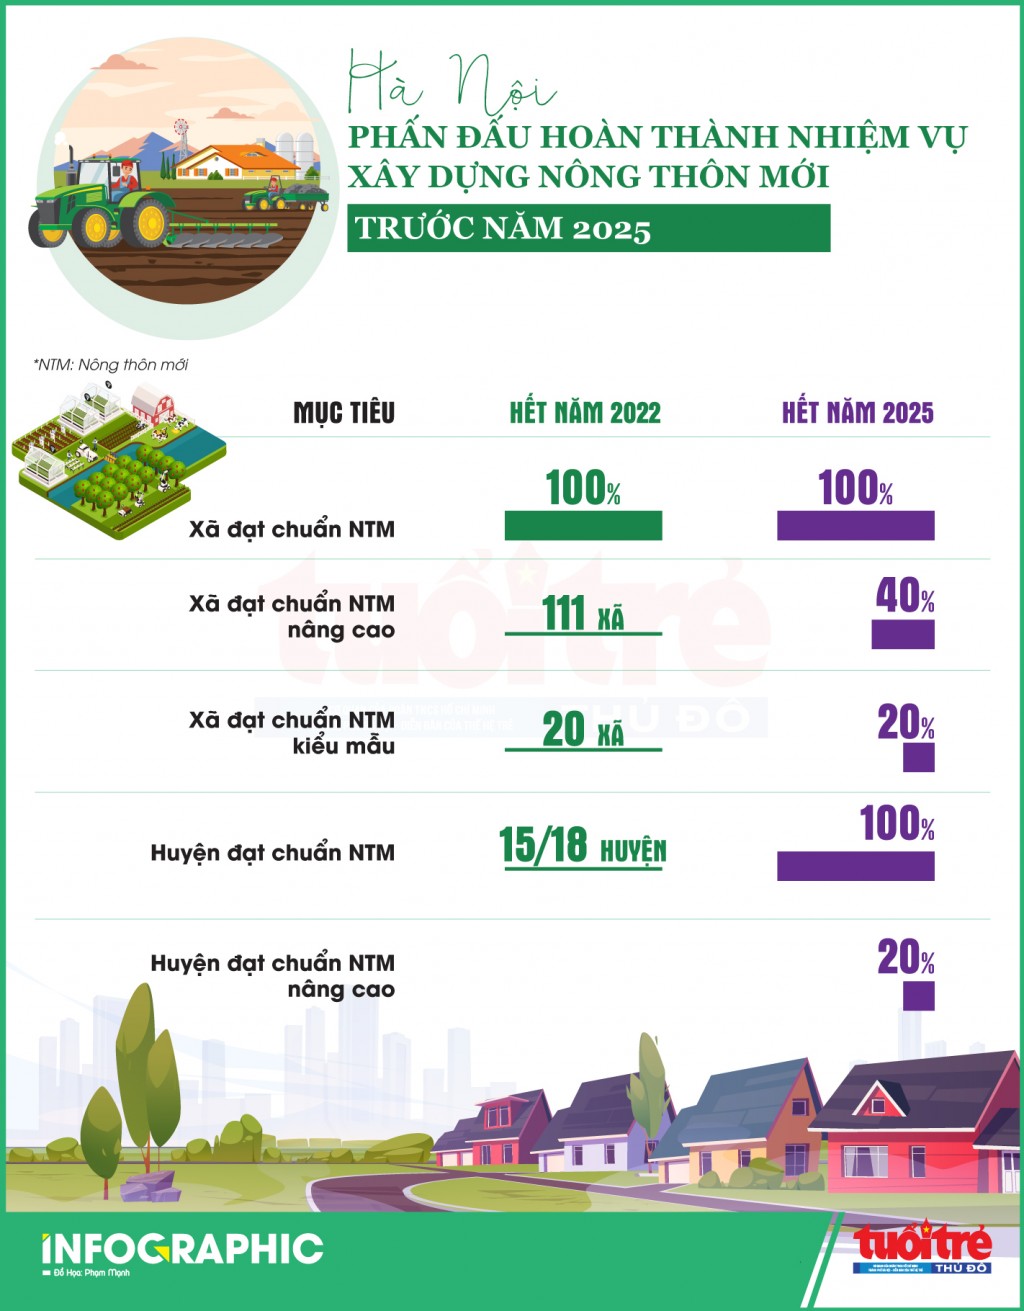 Hà Nội phấn đấu hoàn thành nhiệm vụ xây dựng Nông thôn mới trước năm 2025